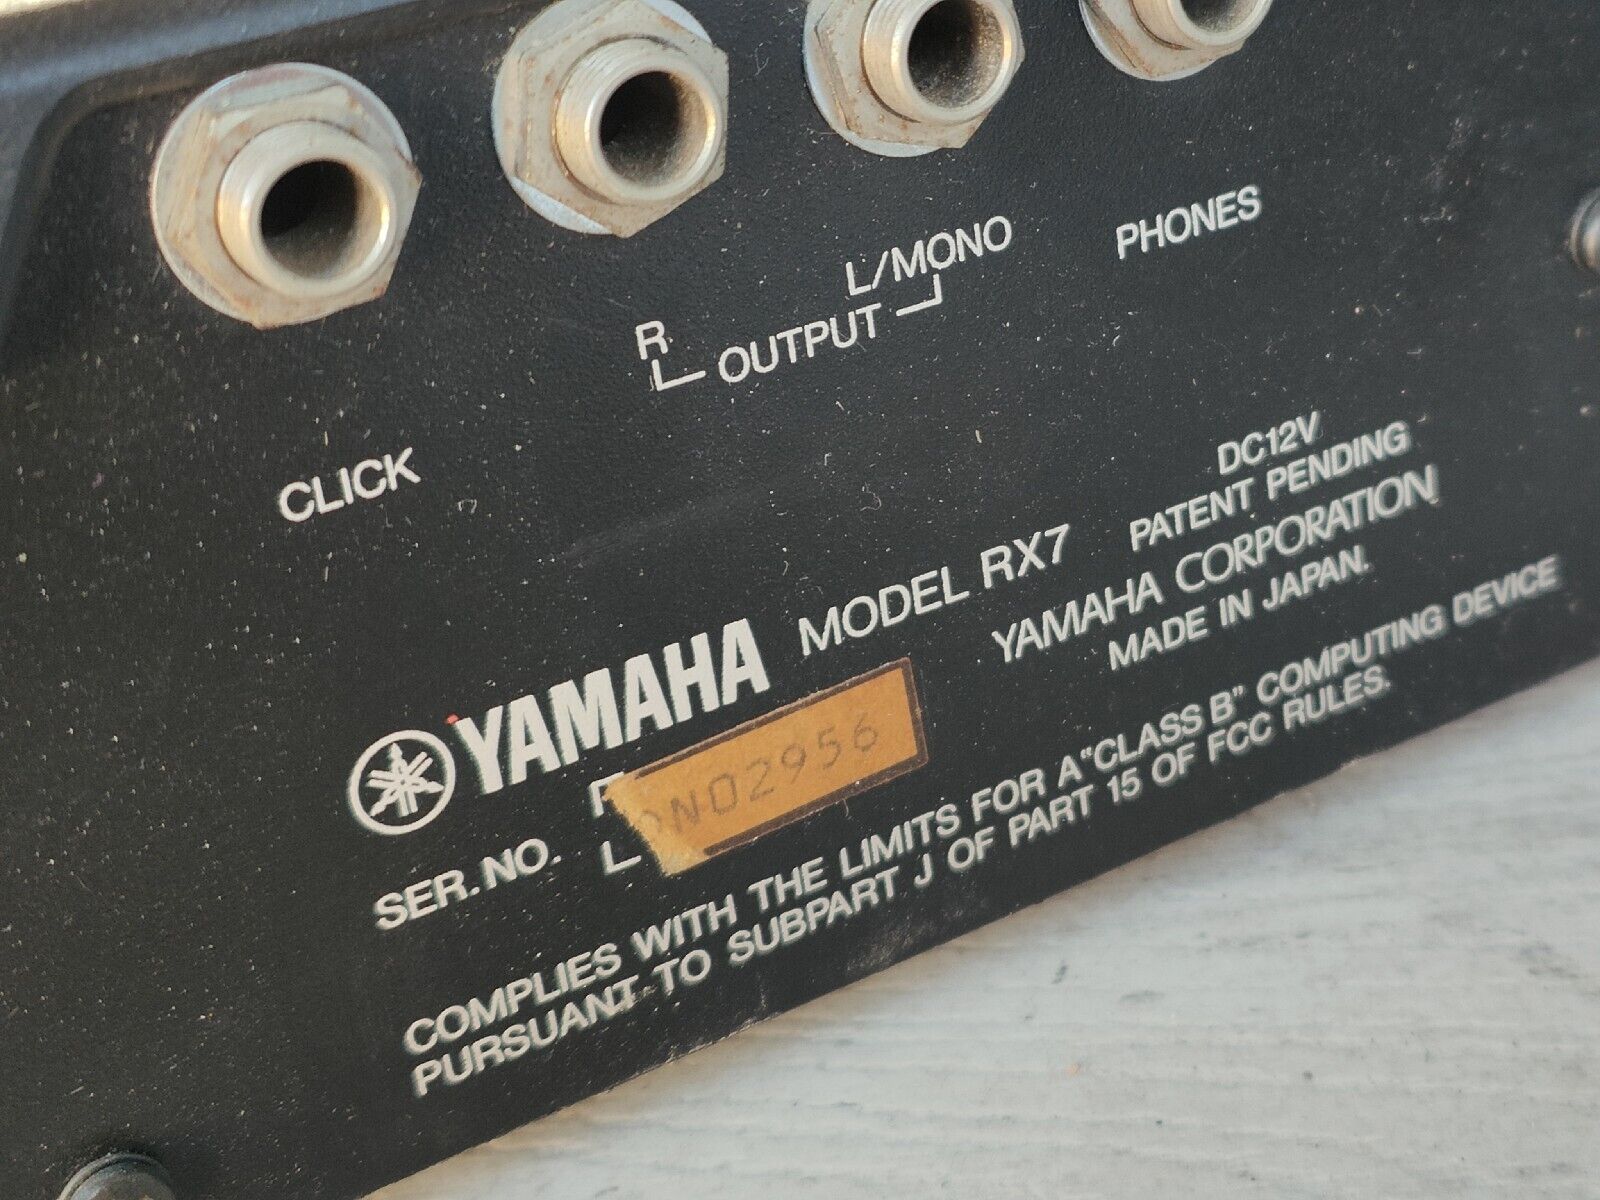 Yamaha RX7 Digital Rhythm Programmer